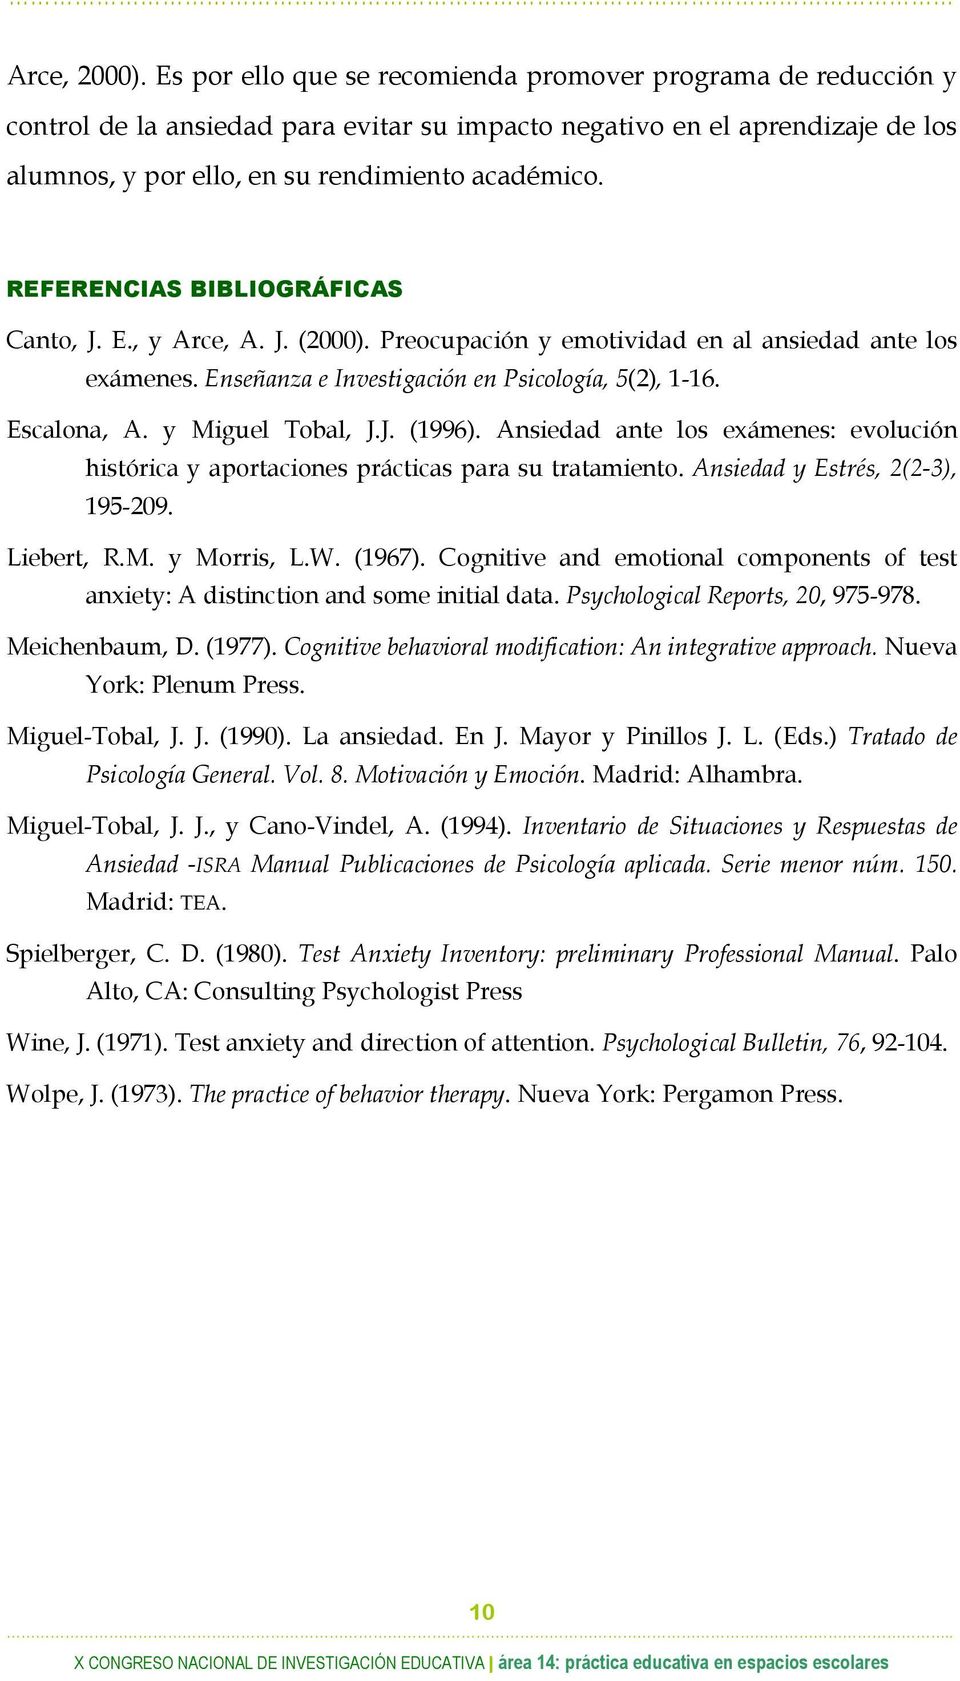 REFERENCIAS BIBLIOGRÁFICAS Canto, J. E., y Arce, A. J. (2000). Preocupación y emotividad en al ansiedad ante los exámenes. Enseñanza e Investigación en Psicología, 5(2), 1-16. Escalona, A.